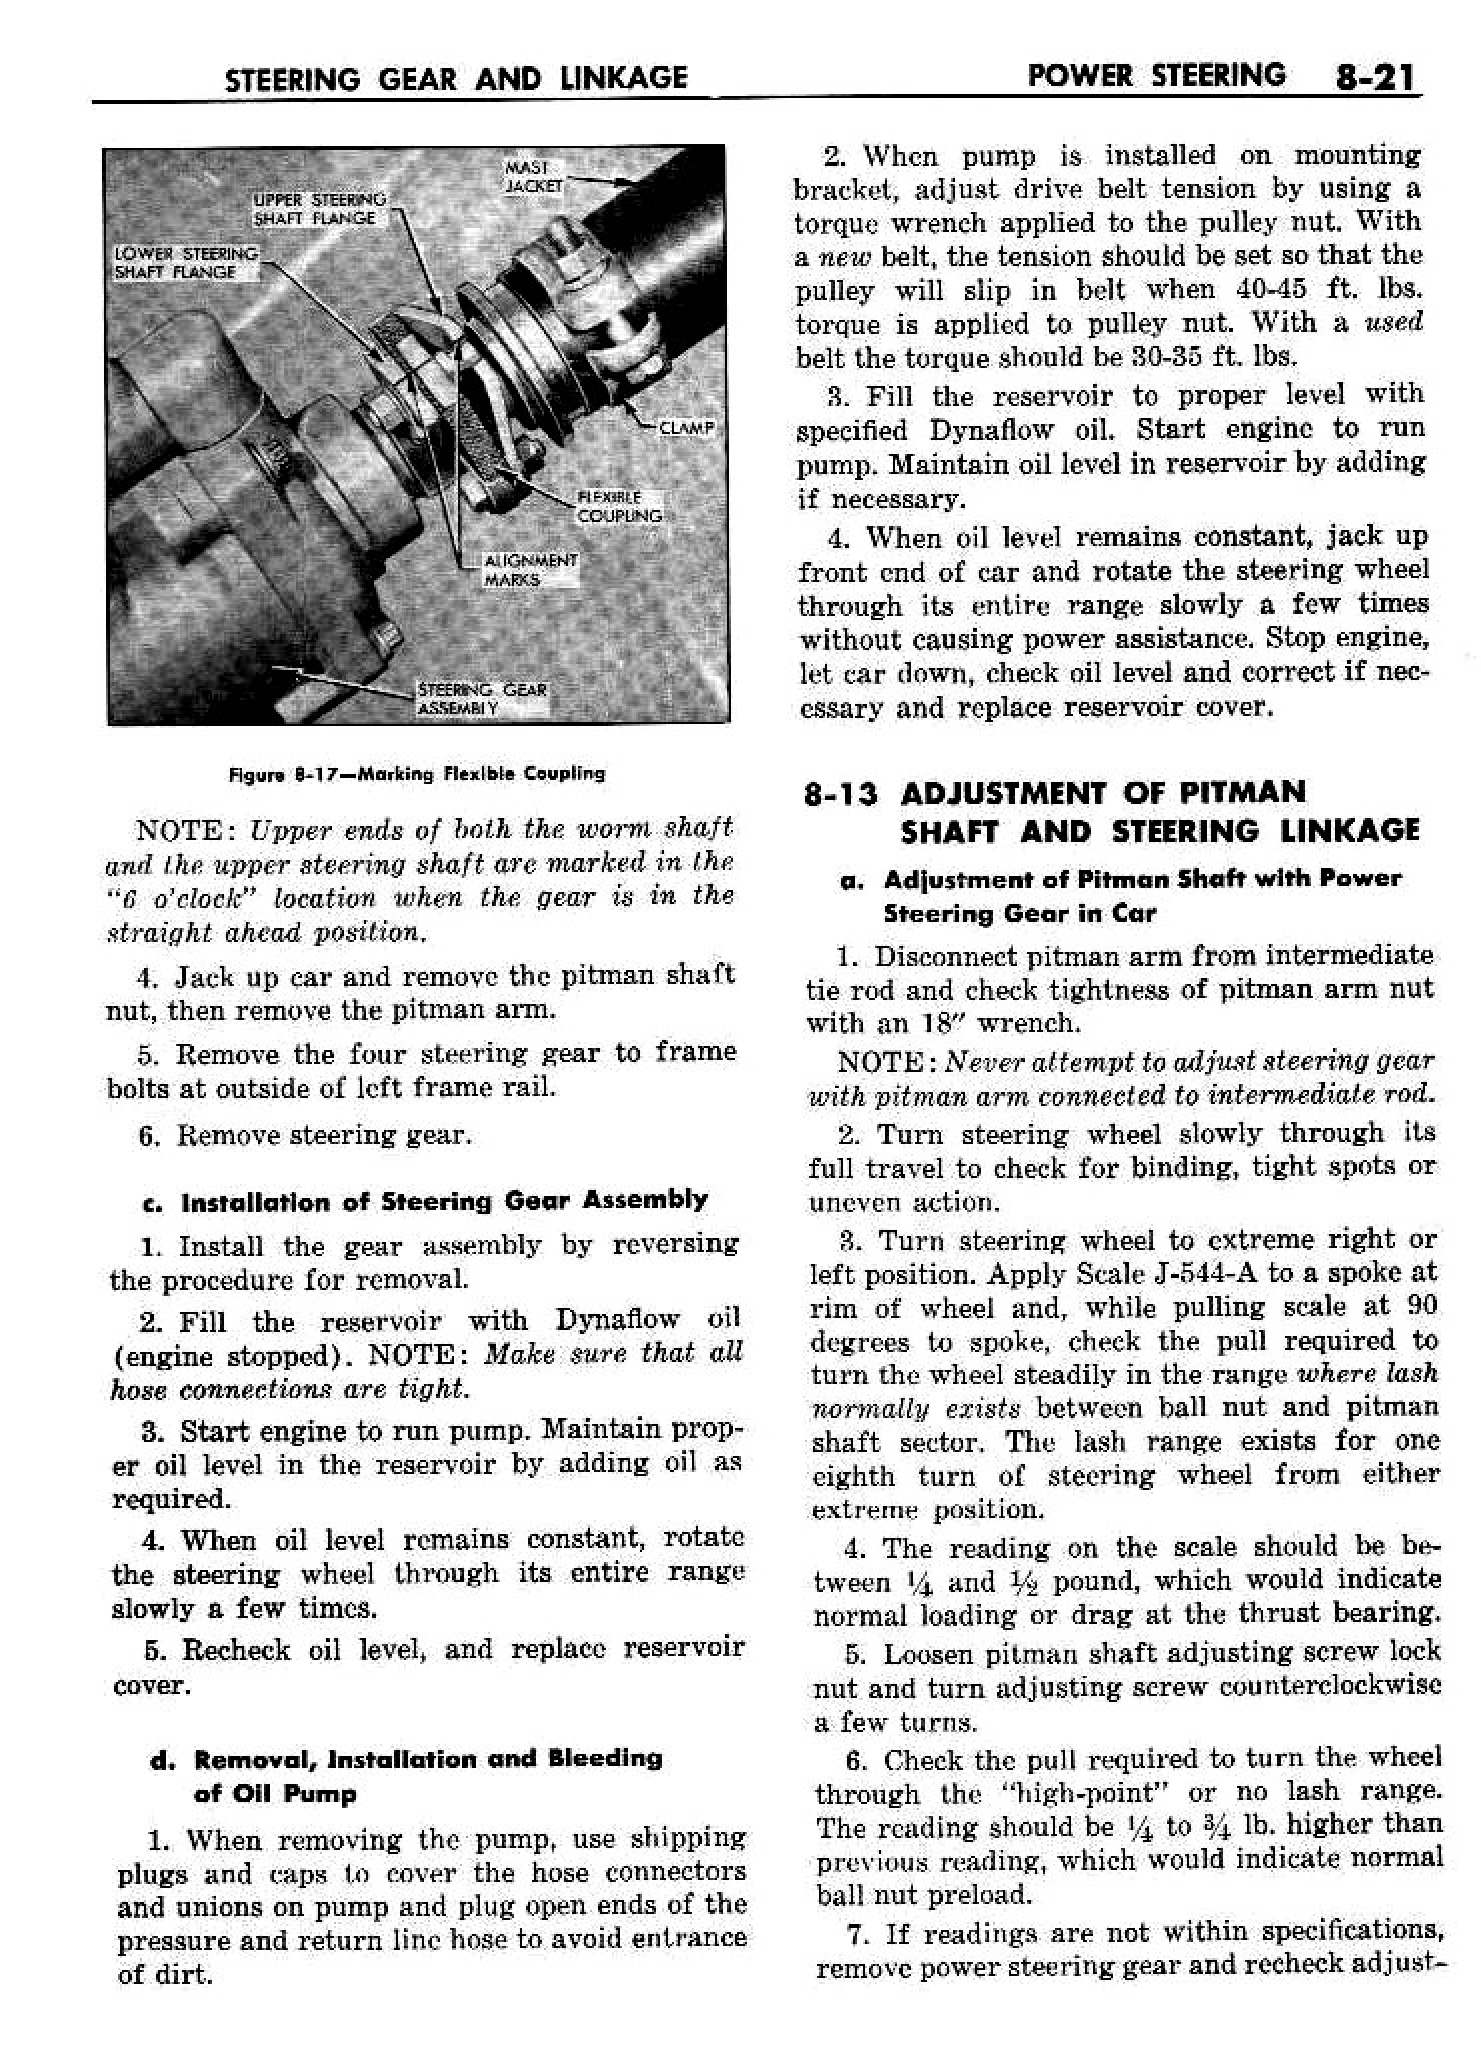 n_09 1958 Buick Shop Manual - Steering_21.jpg